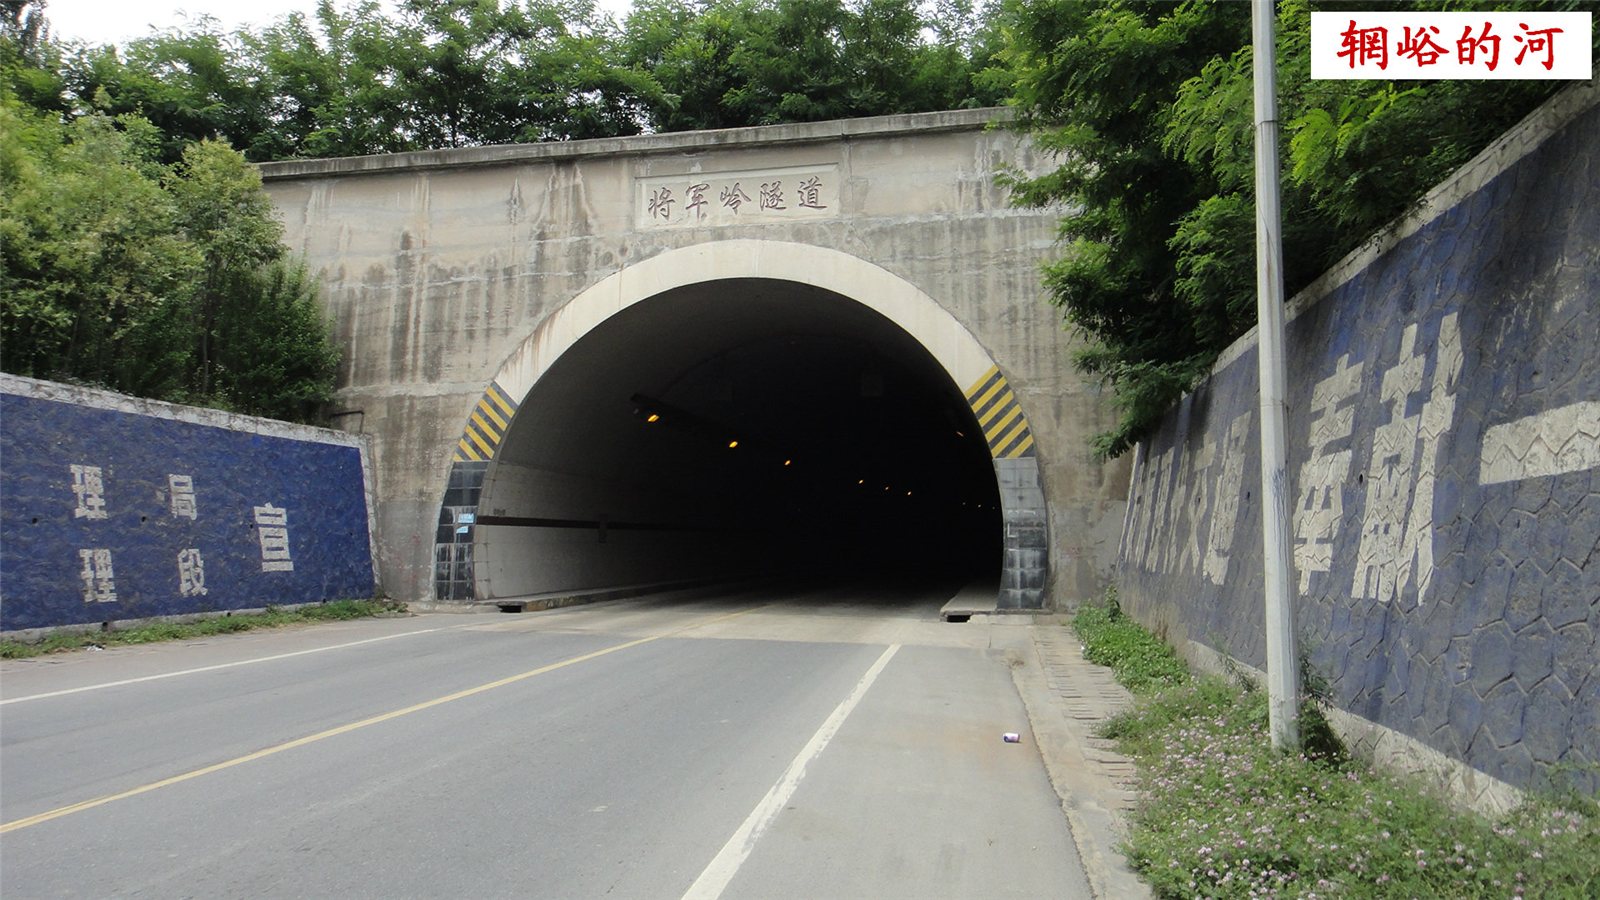 现在进入将军岭隧道.一出隧道向左转,方向前卫镇将军村.